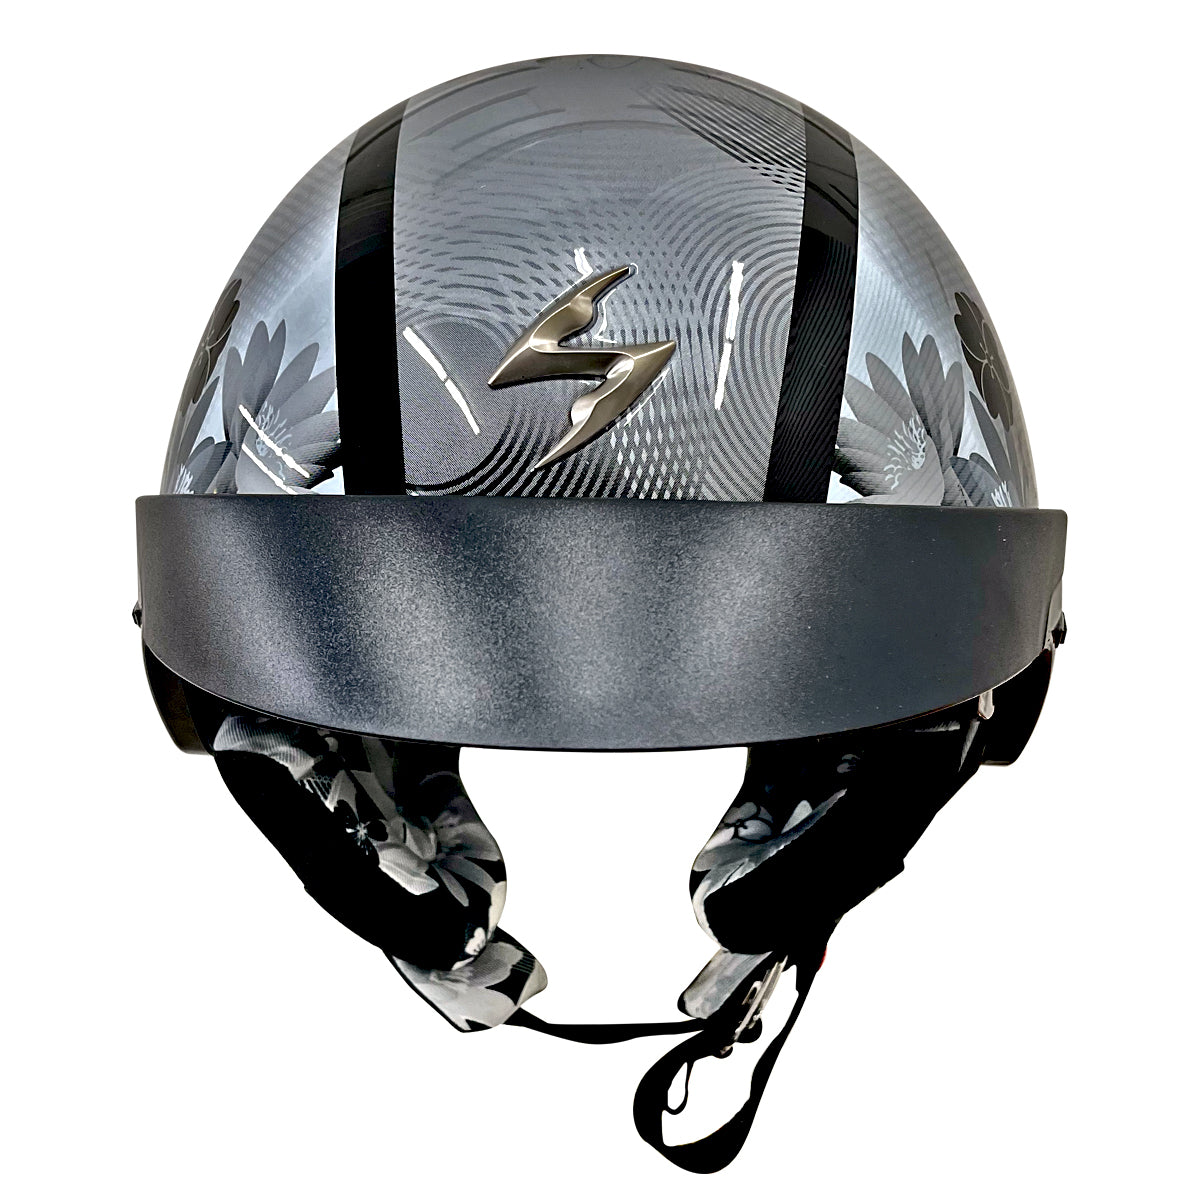 Outlaw Helmets T99 Silver Chrome German Style Motorcycle Half Helmet for Men & Women Dot Approved - Adult Unisex Skull Cap for Bike Scooter ATV UTV